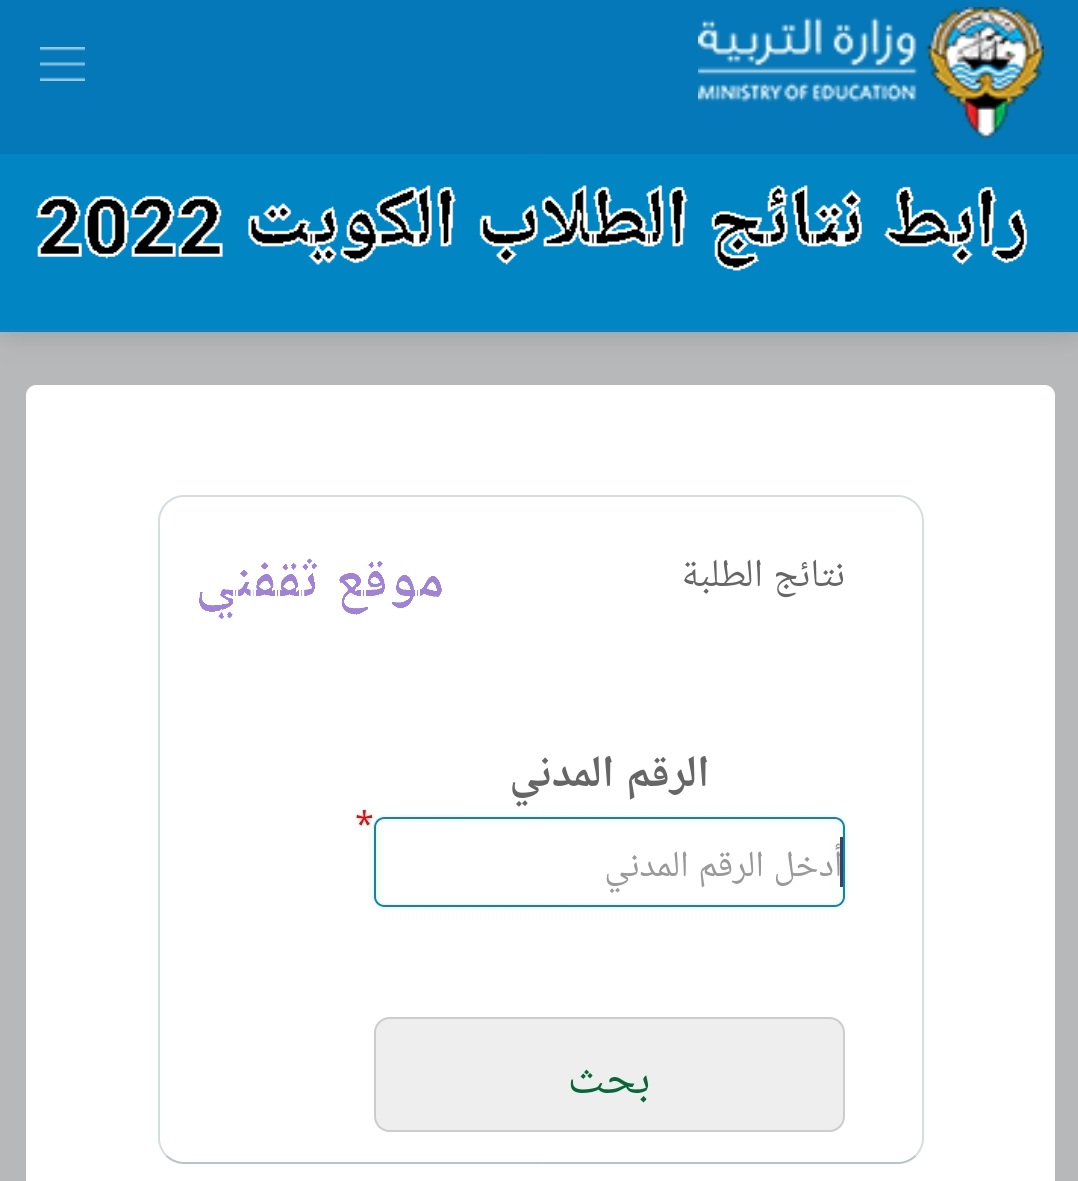 رابط نتائج الطلاب الثانوي 2022 لاستراج نتيجة الثانوية العامة 2022 عبر موقع وزارة التربية مباشرة بالمدني فقط